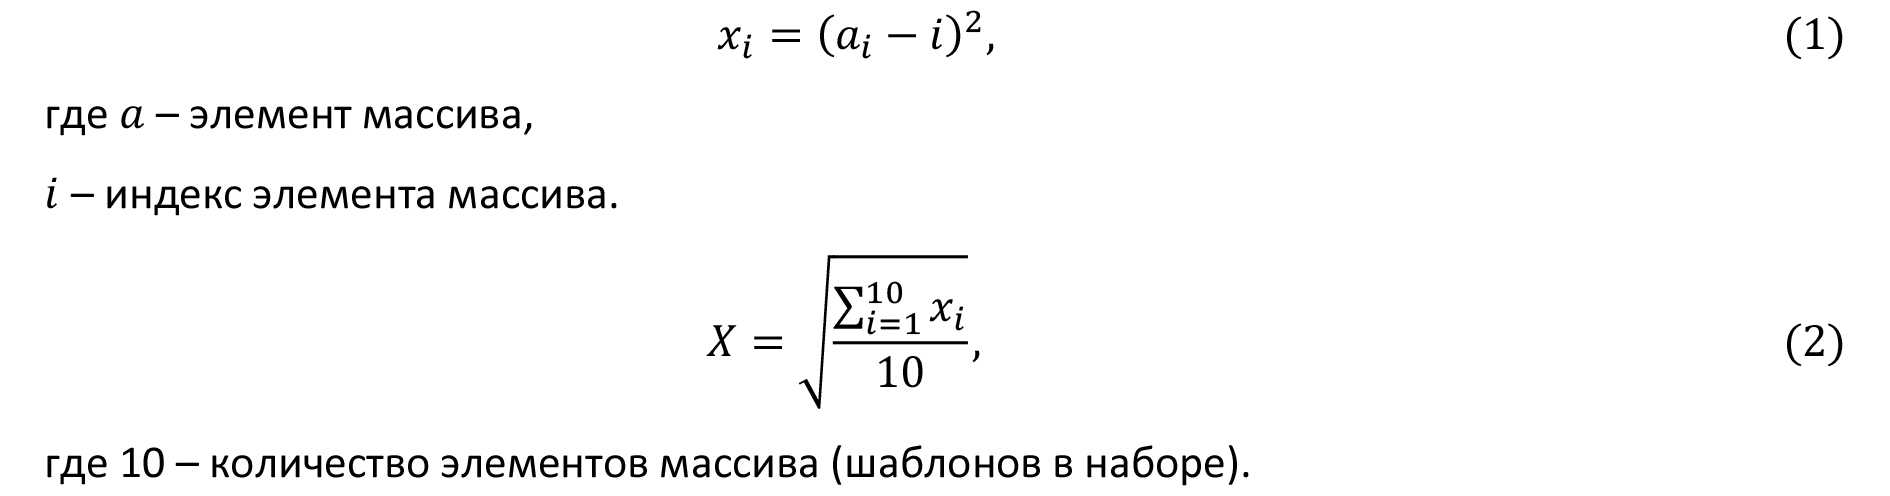 формулы 1, 2